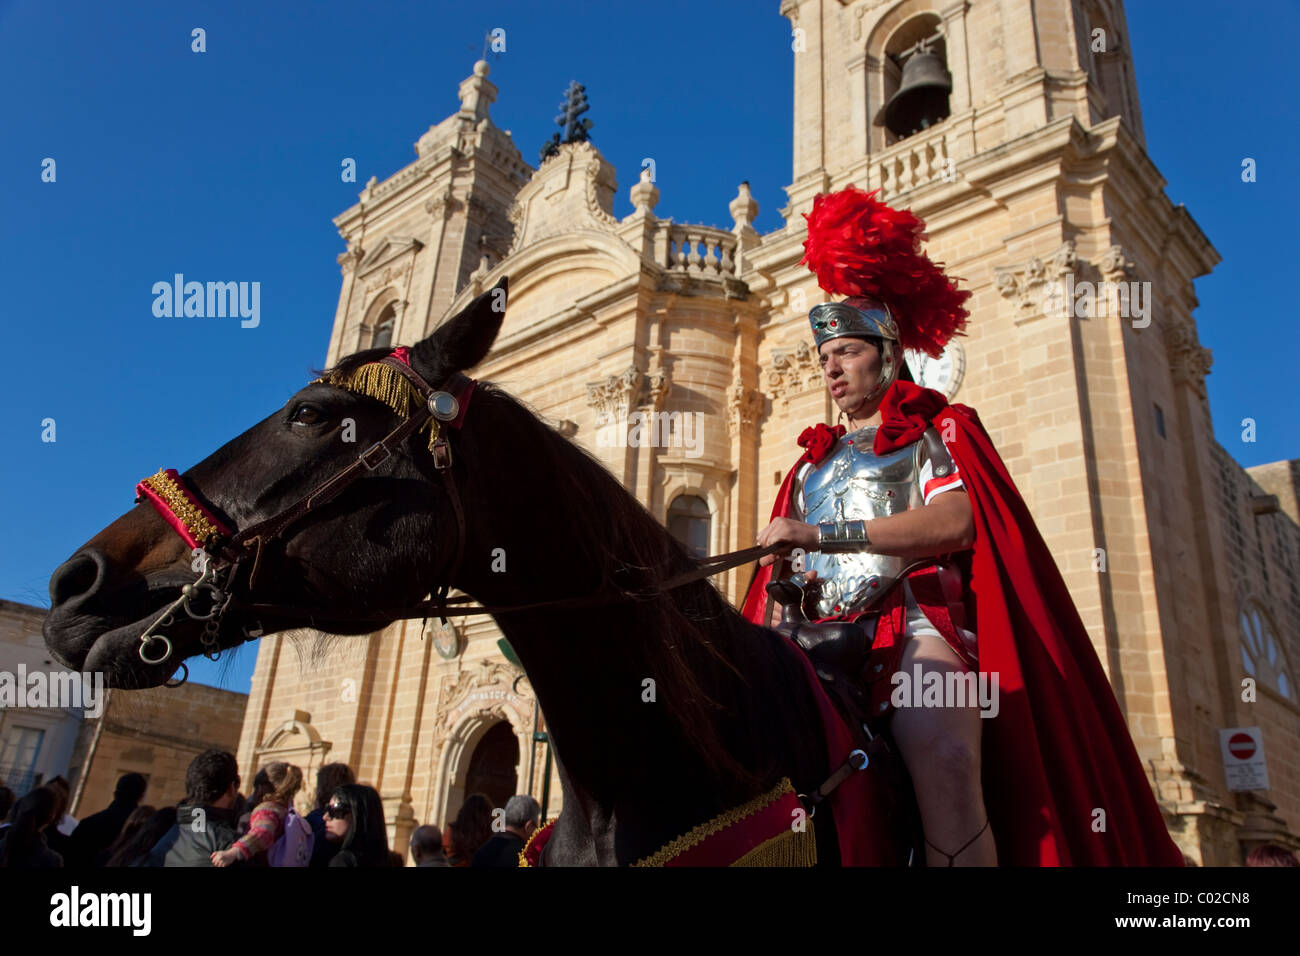 Ein römischer Feldherr, montiert auf einem Hengst nimmt Teil in traditionellen Prunk und Parade in Xaghra Stadt in Malta am Karfreitag. Stockfoto